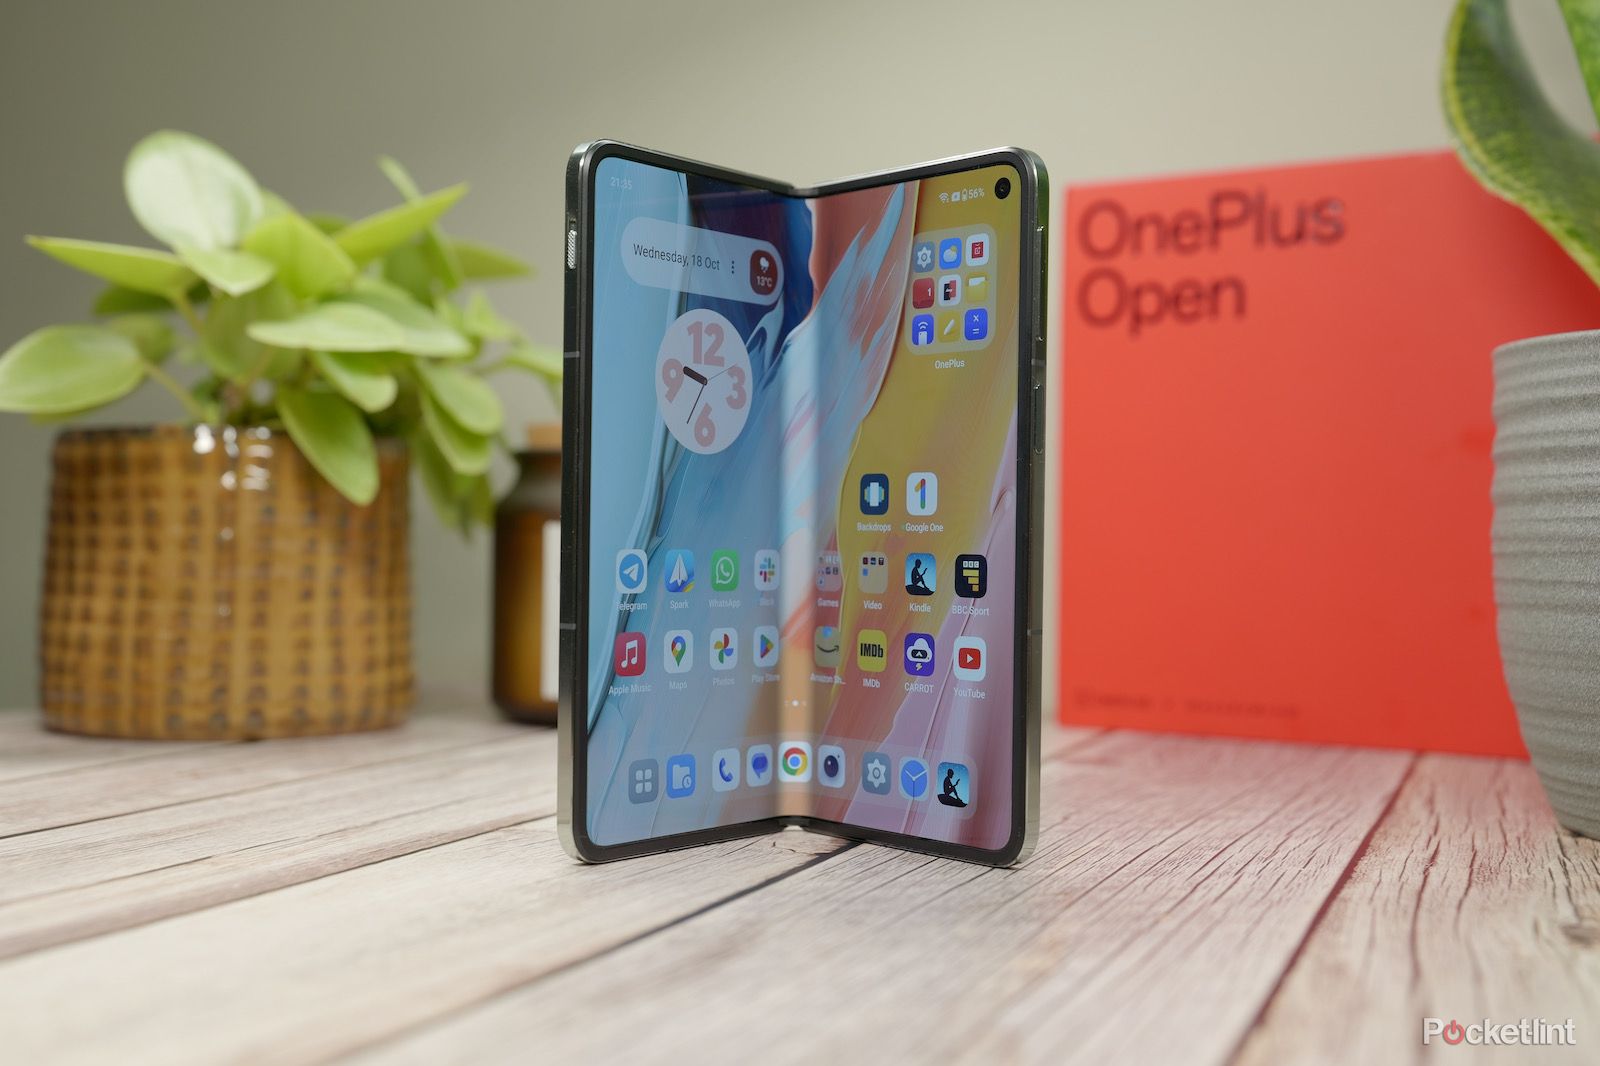 OnePlus Open - standing - open - main display